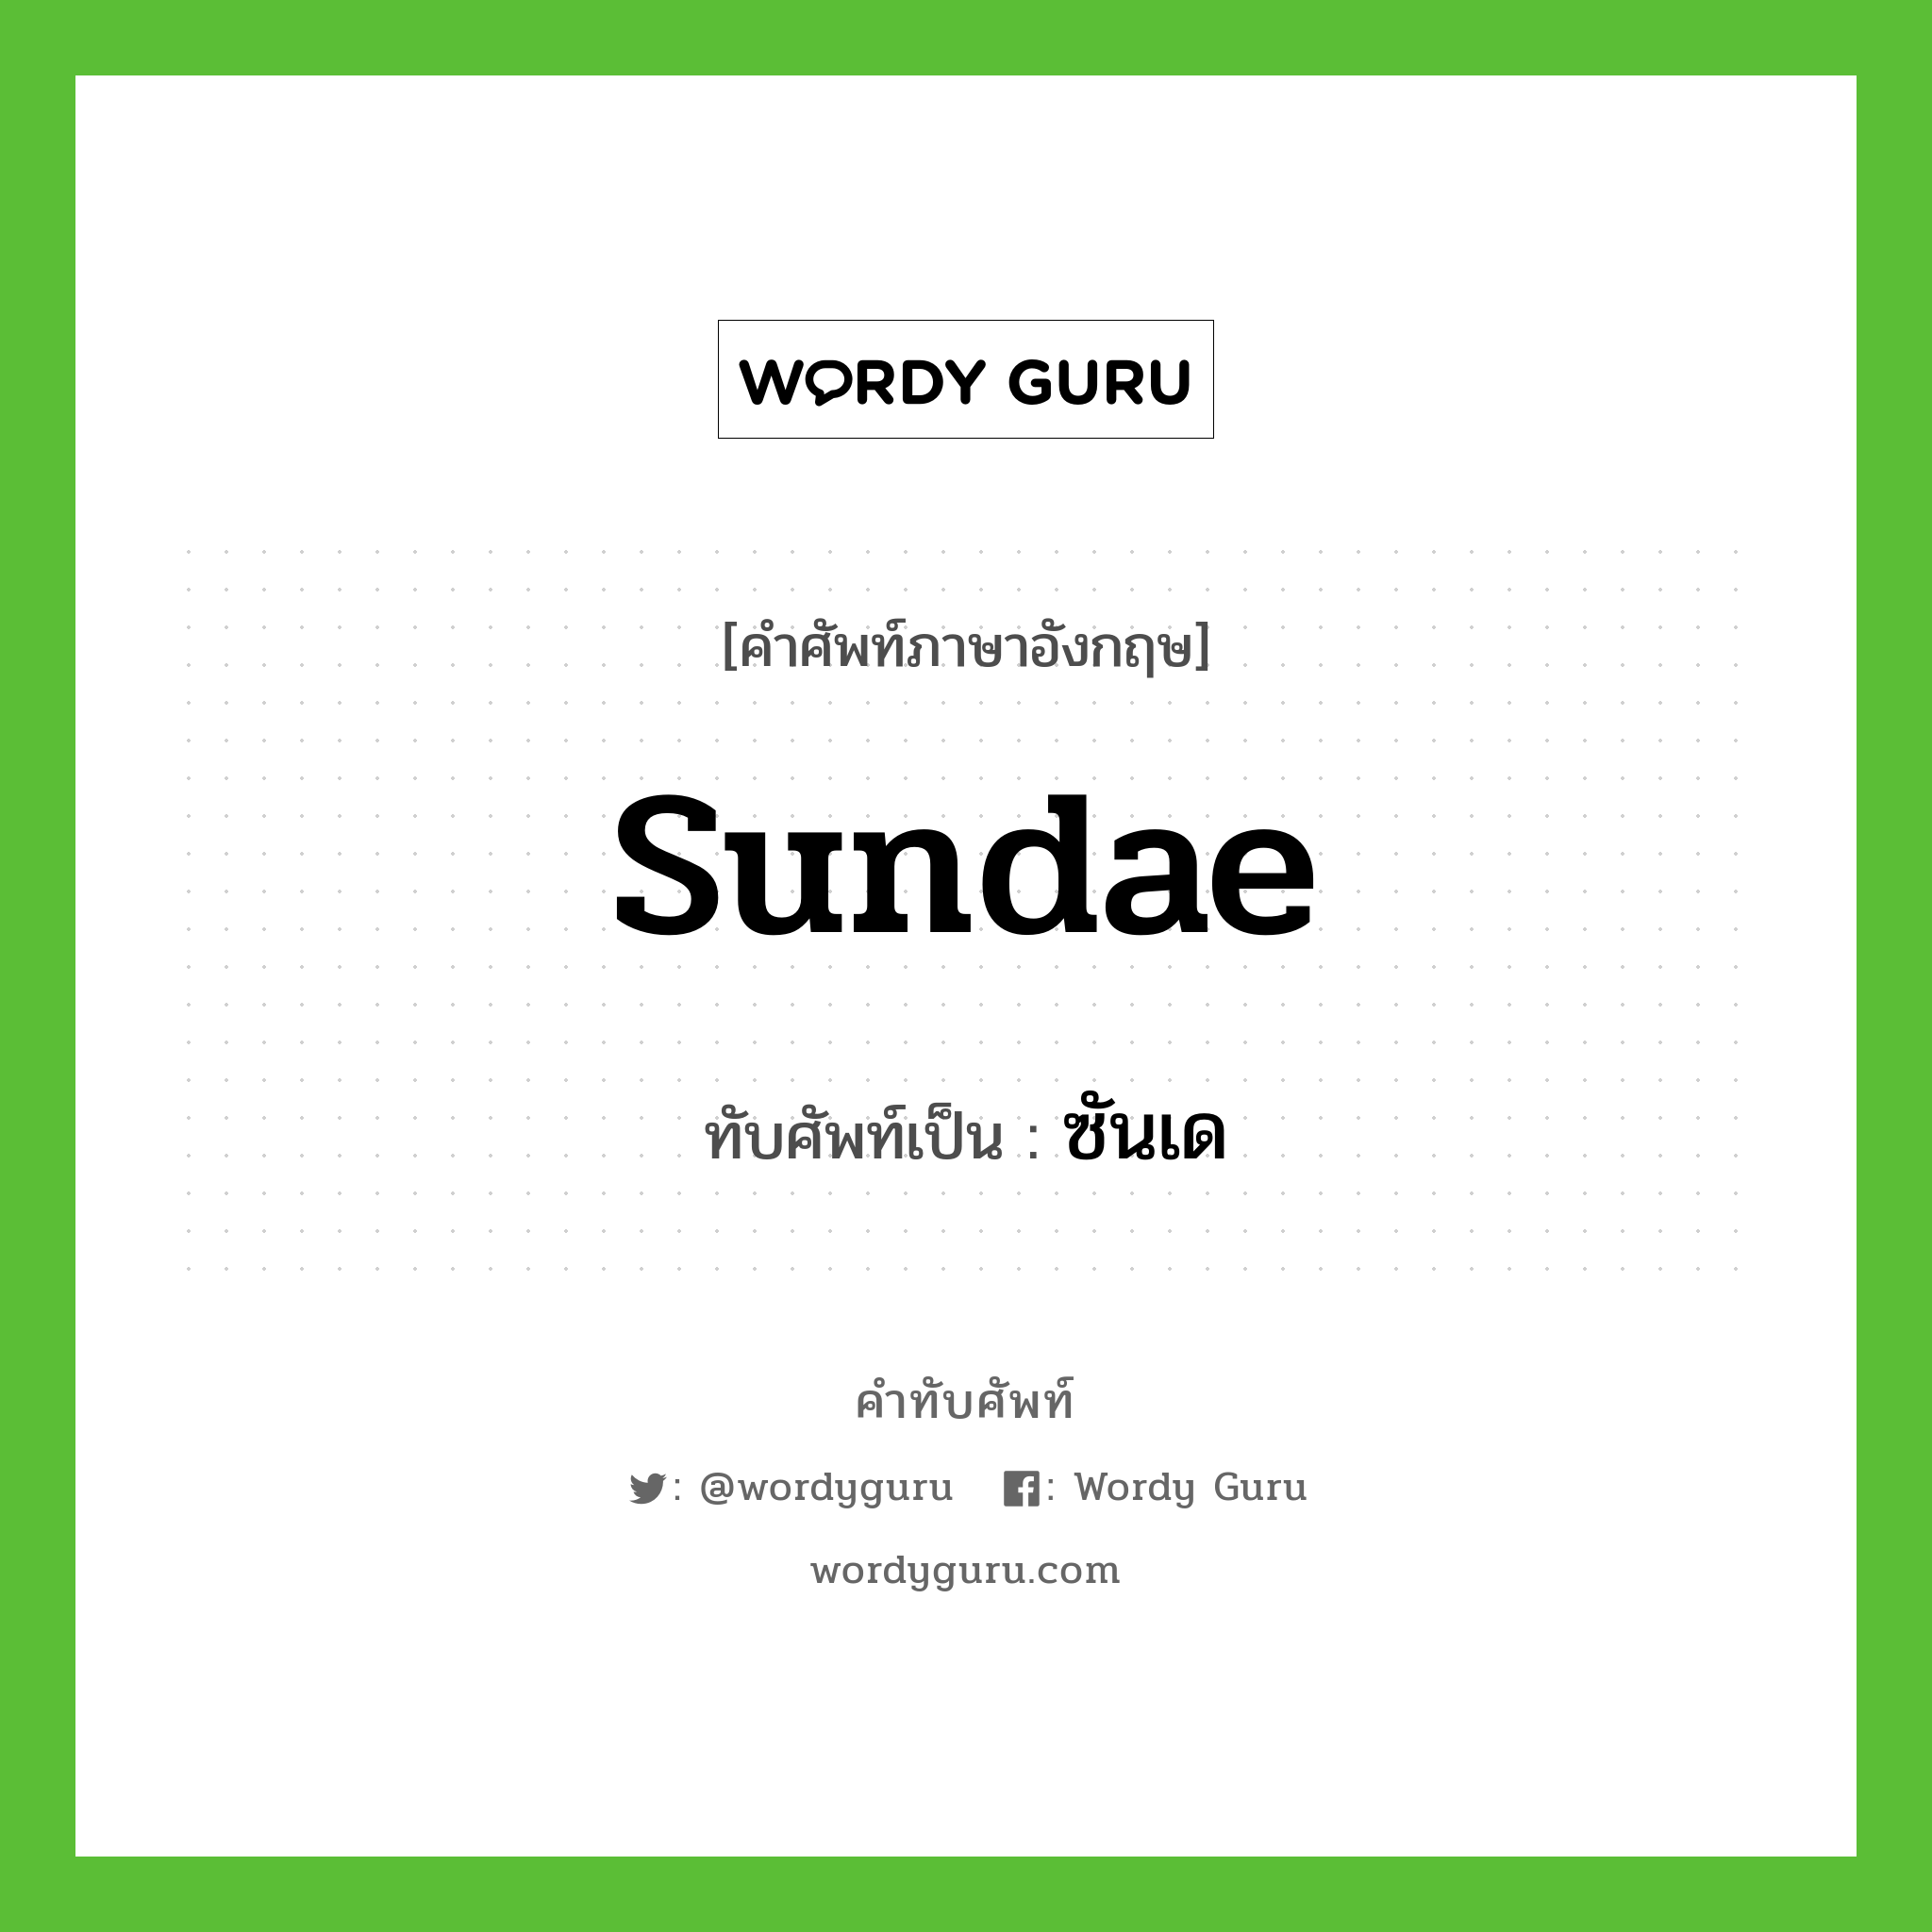 sundae เขียนเป็นคำไทยว่าอะไร?, คำศัพท์ภาษาอังกฤษ sundae ทับศัพท์เป็น ซันเด